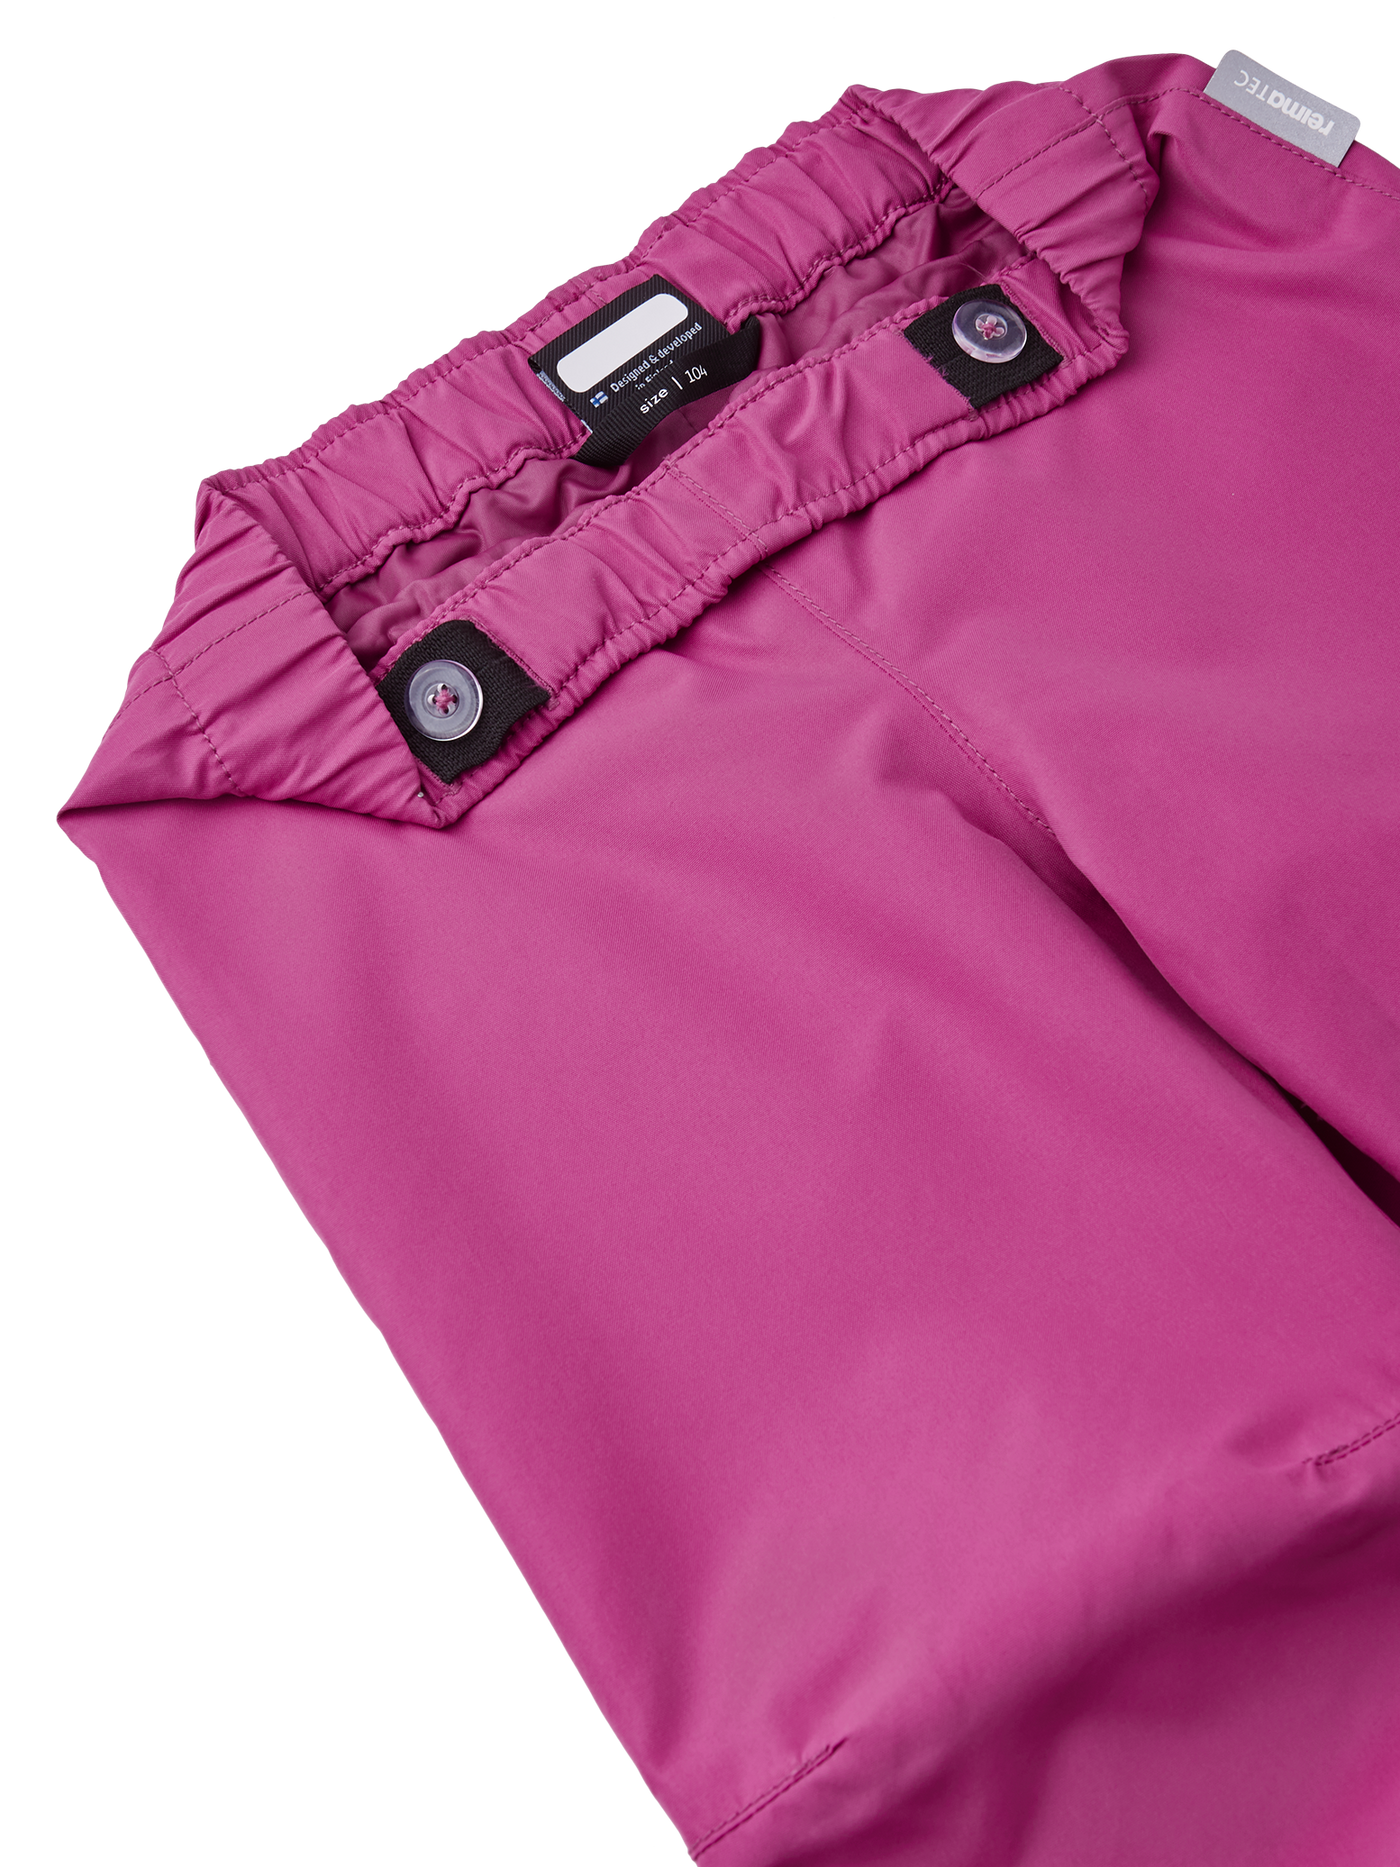 Reimatec Kaura välikausihousut Magenta Purple sävyssä kuvattuna housujen vyötärönauhaa